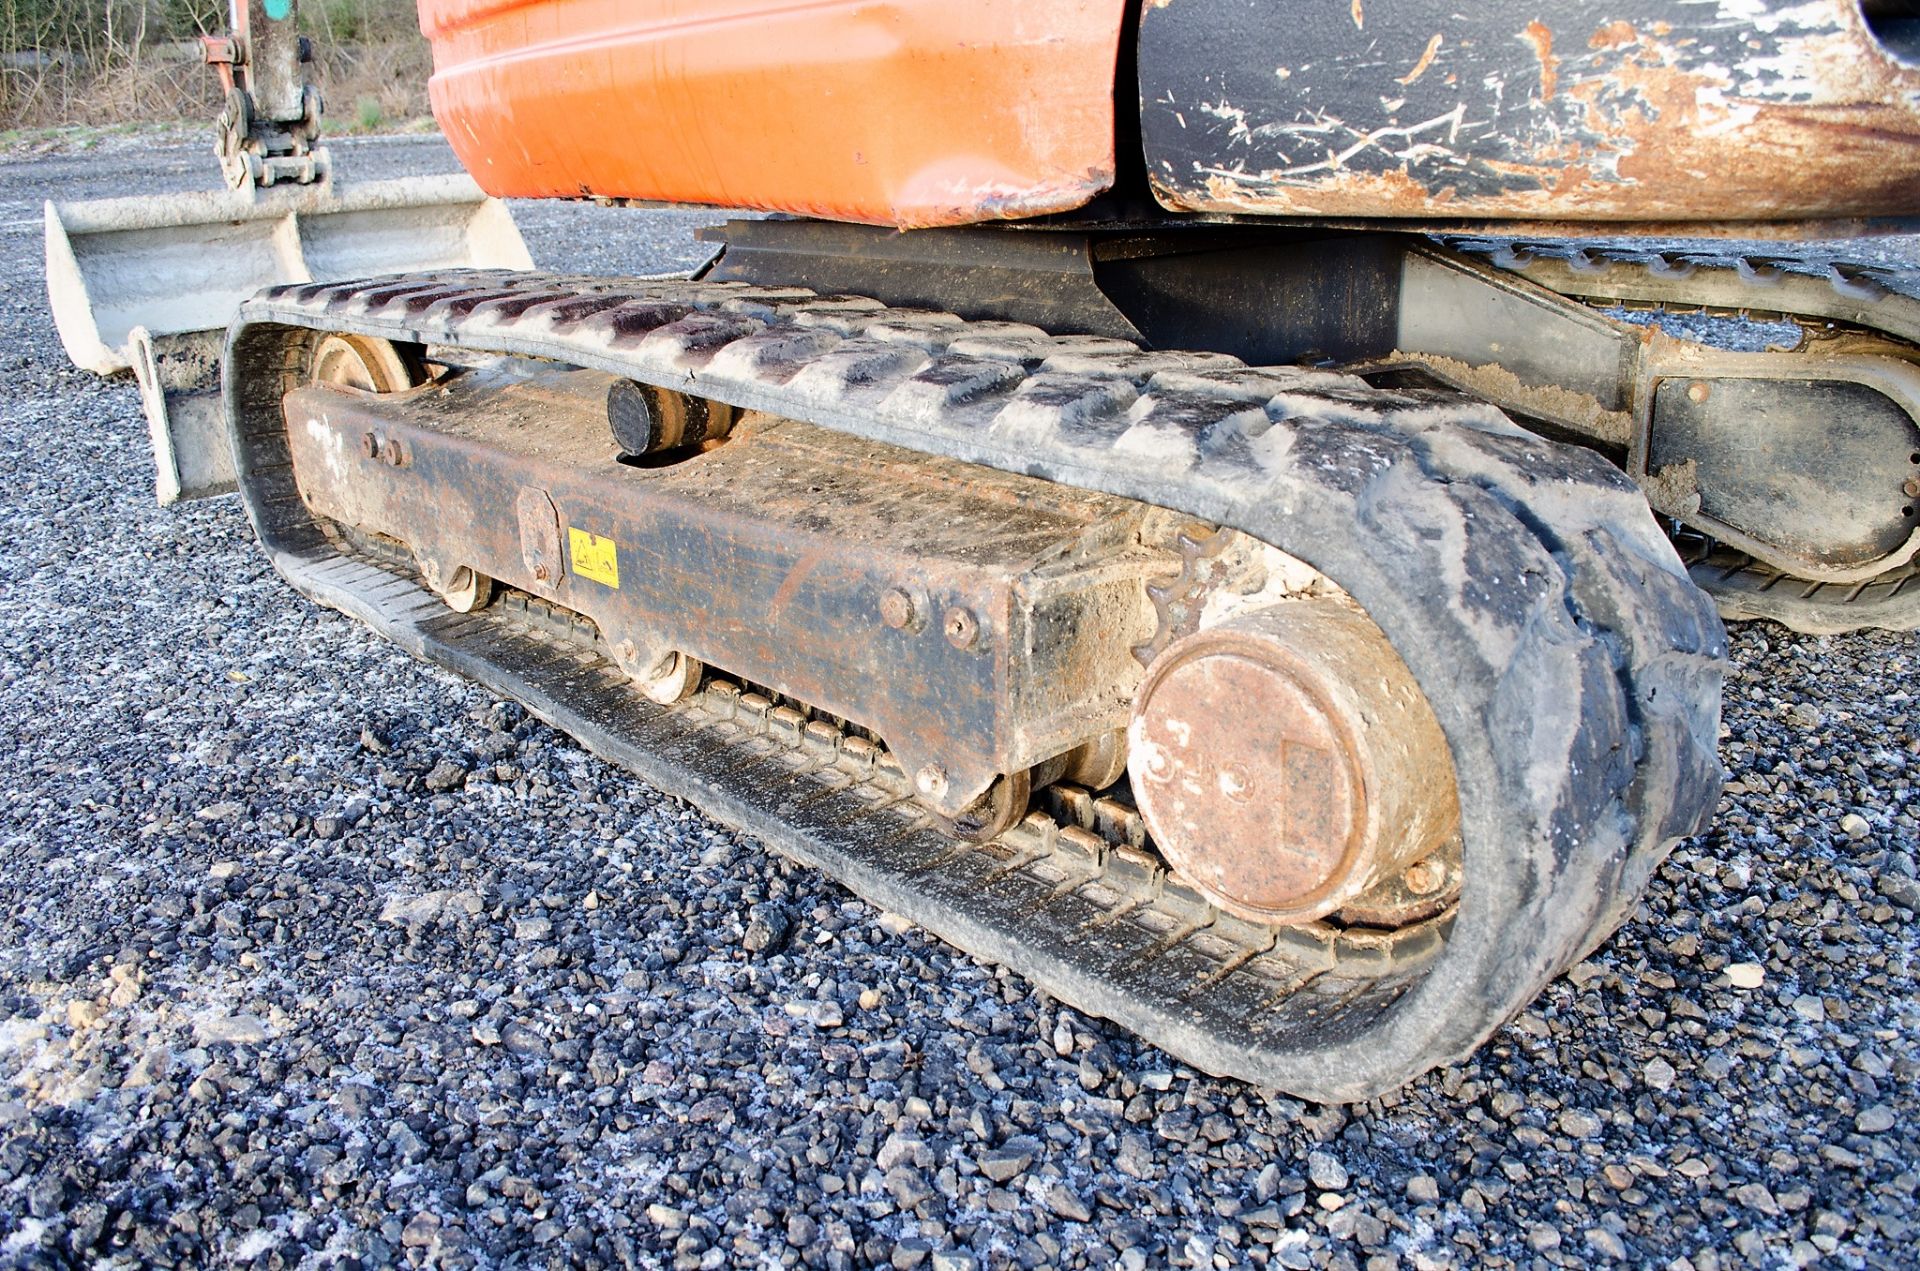 Kubota KX71-3 2.6 tonne rubber tracked excavator - Image 13 of 19